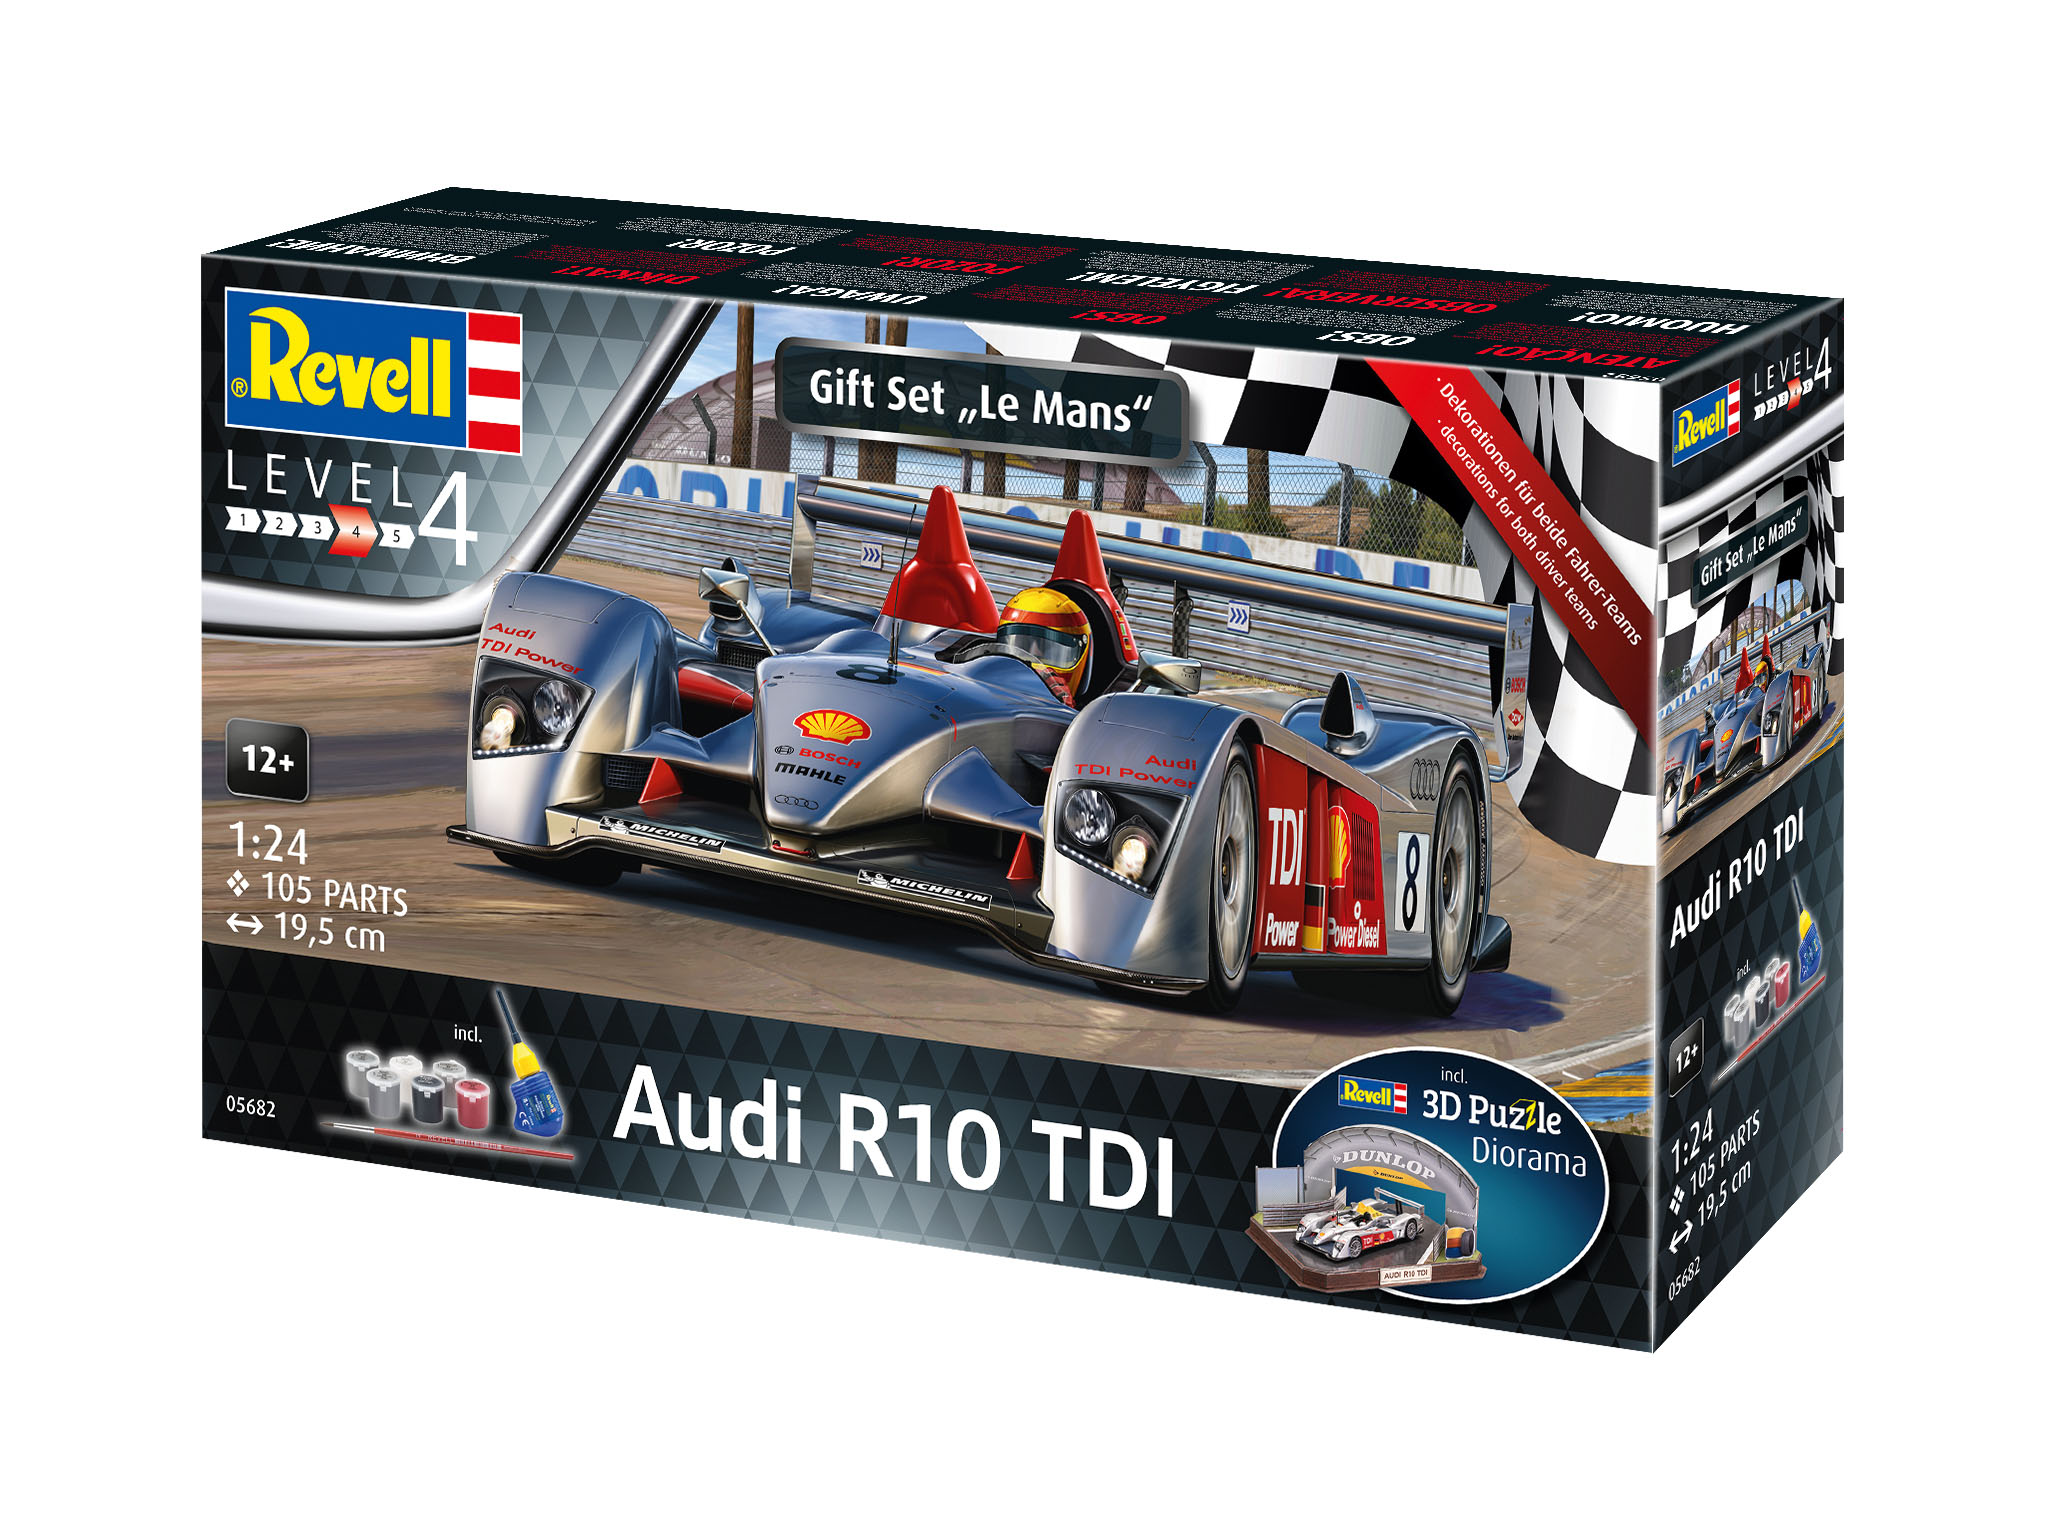 Audi R10 TDI Le Mans + 3D Puz - 05682